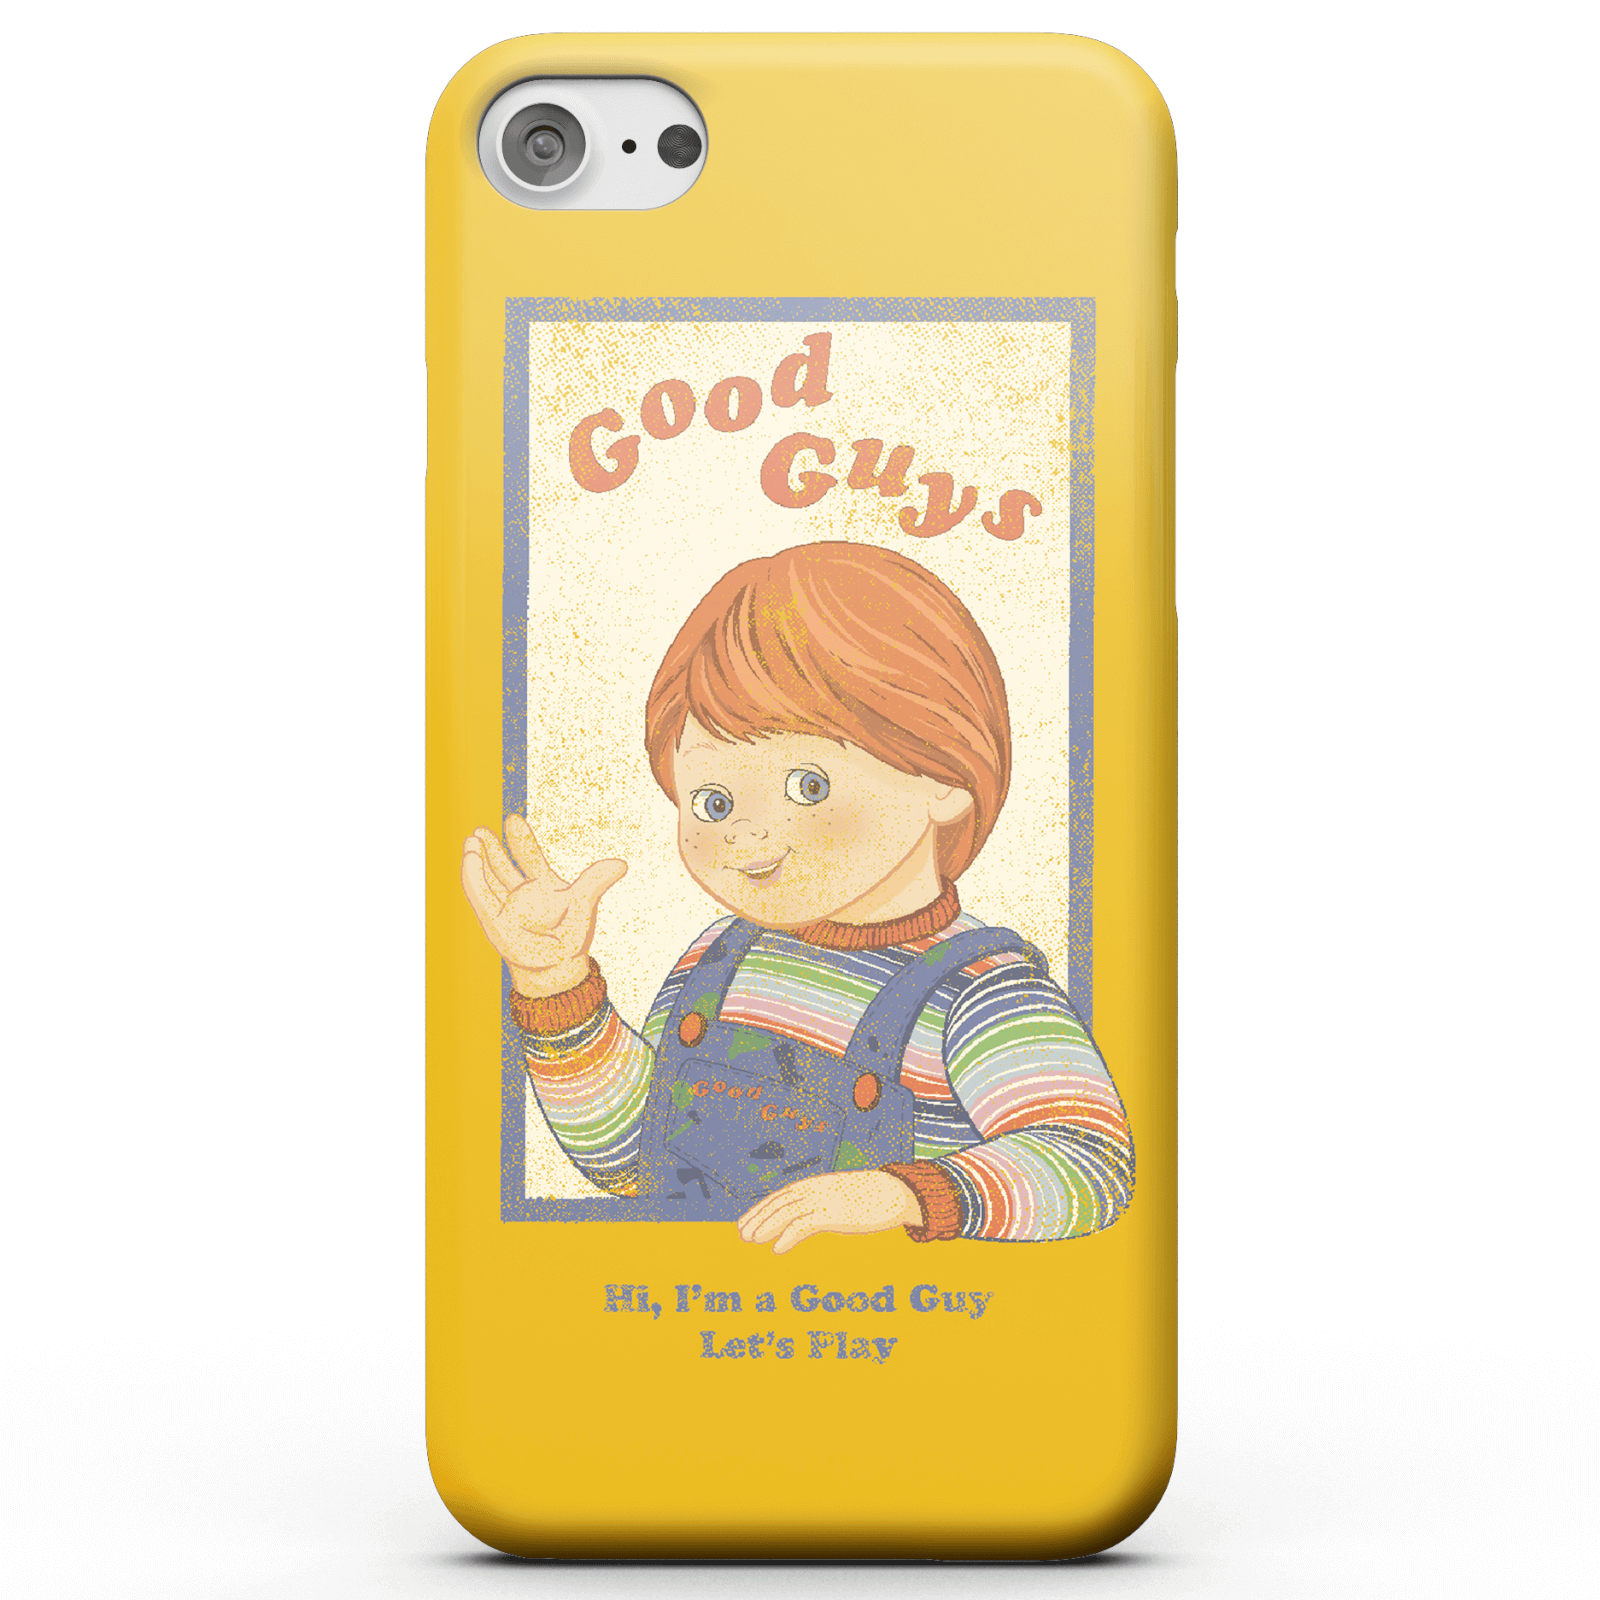 Funda Móvil Chucky Good Guys Retro para iPhone y Android - Samsung S6 Edge - Carcasa rígida - Mate